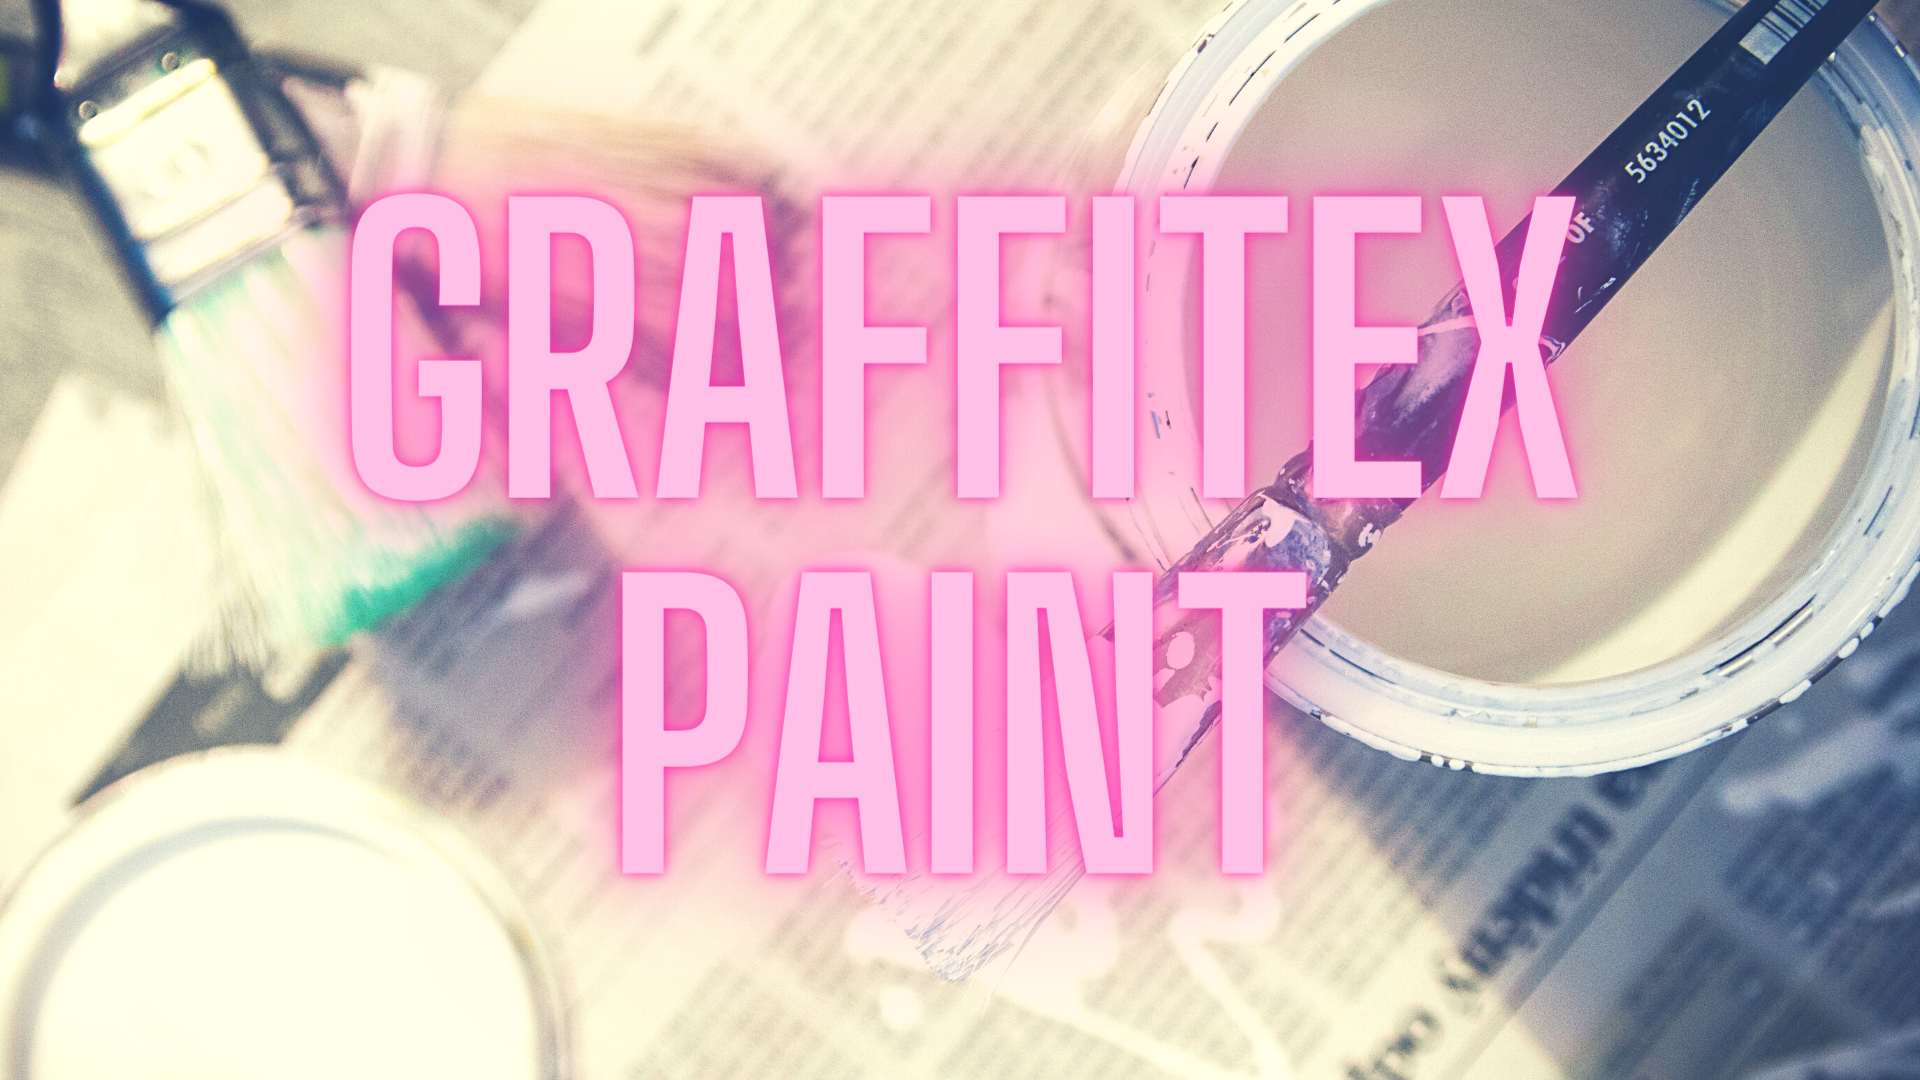 Graffitex Paint Production